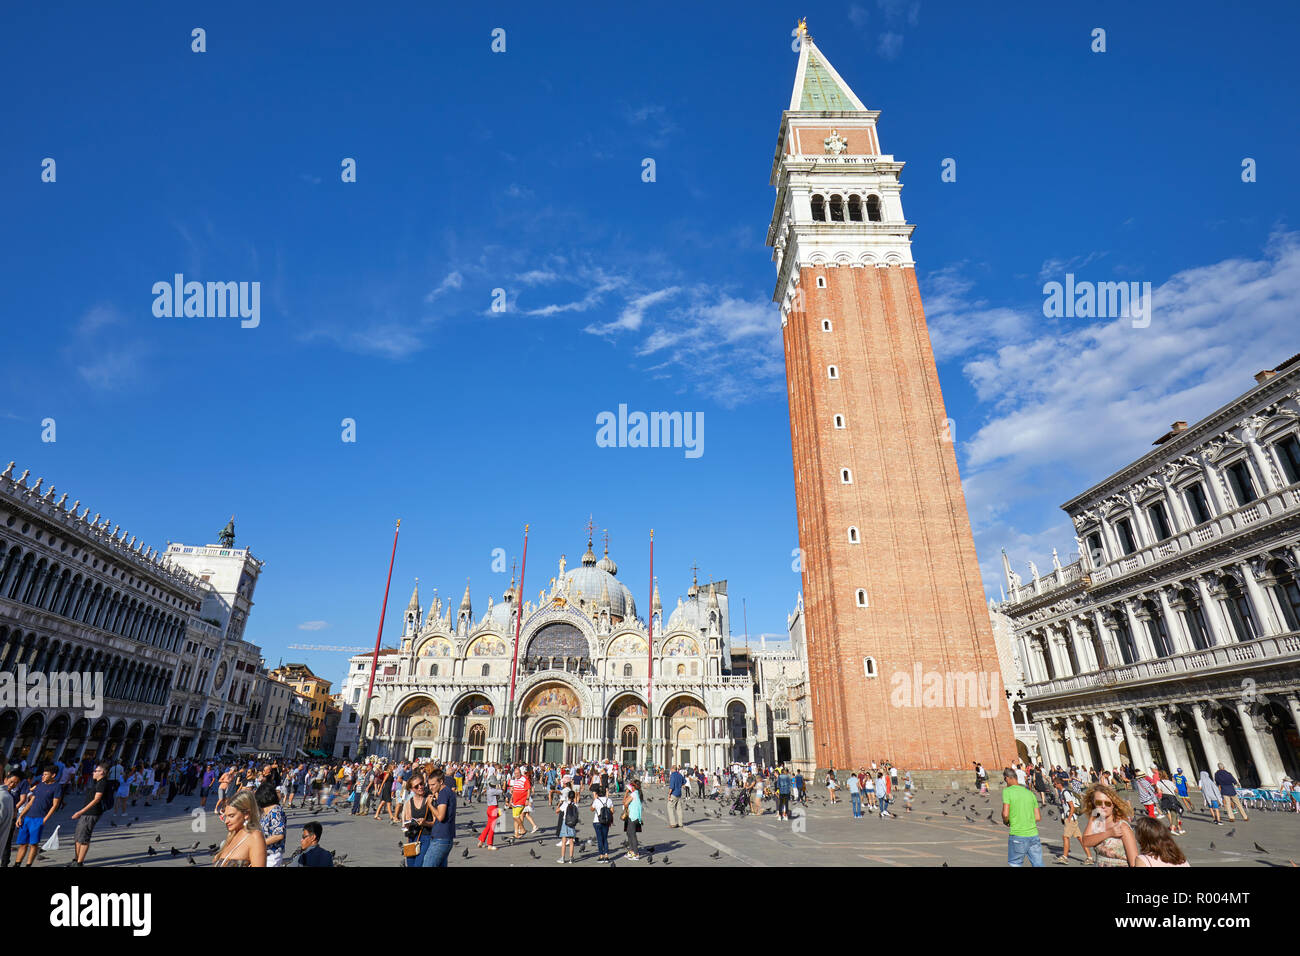 Venedig, Italien, 12. AUGUST 2017: San Marco Platz, Basilika Fassade, den Glockenturm und die Masse der Leute und Touristen, blauer Himmel an einem sonnigen Sommertag in Ita Stockfoto